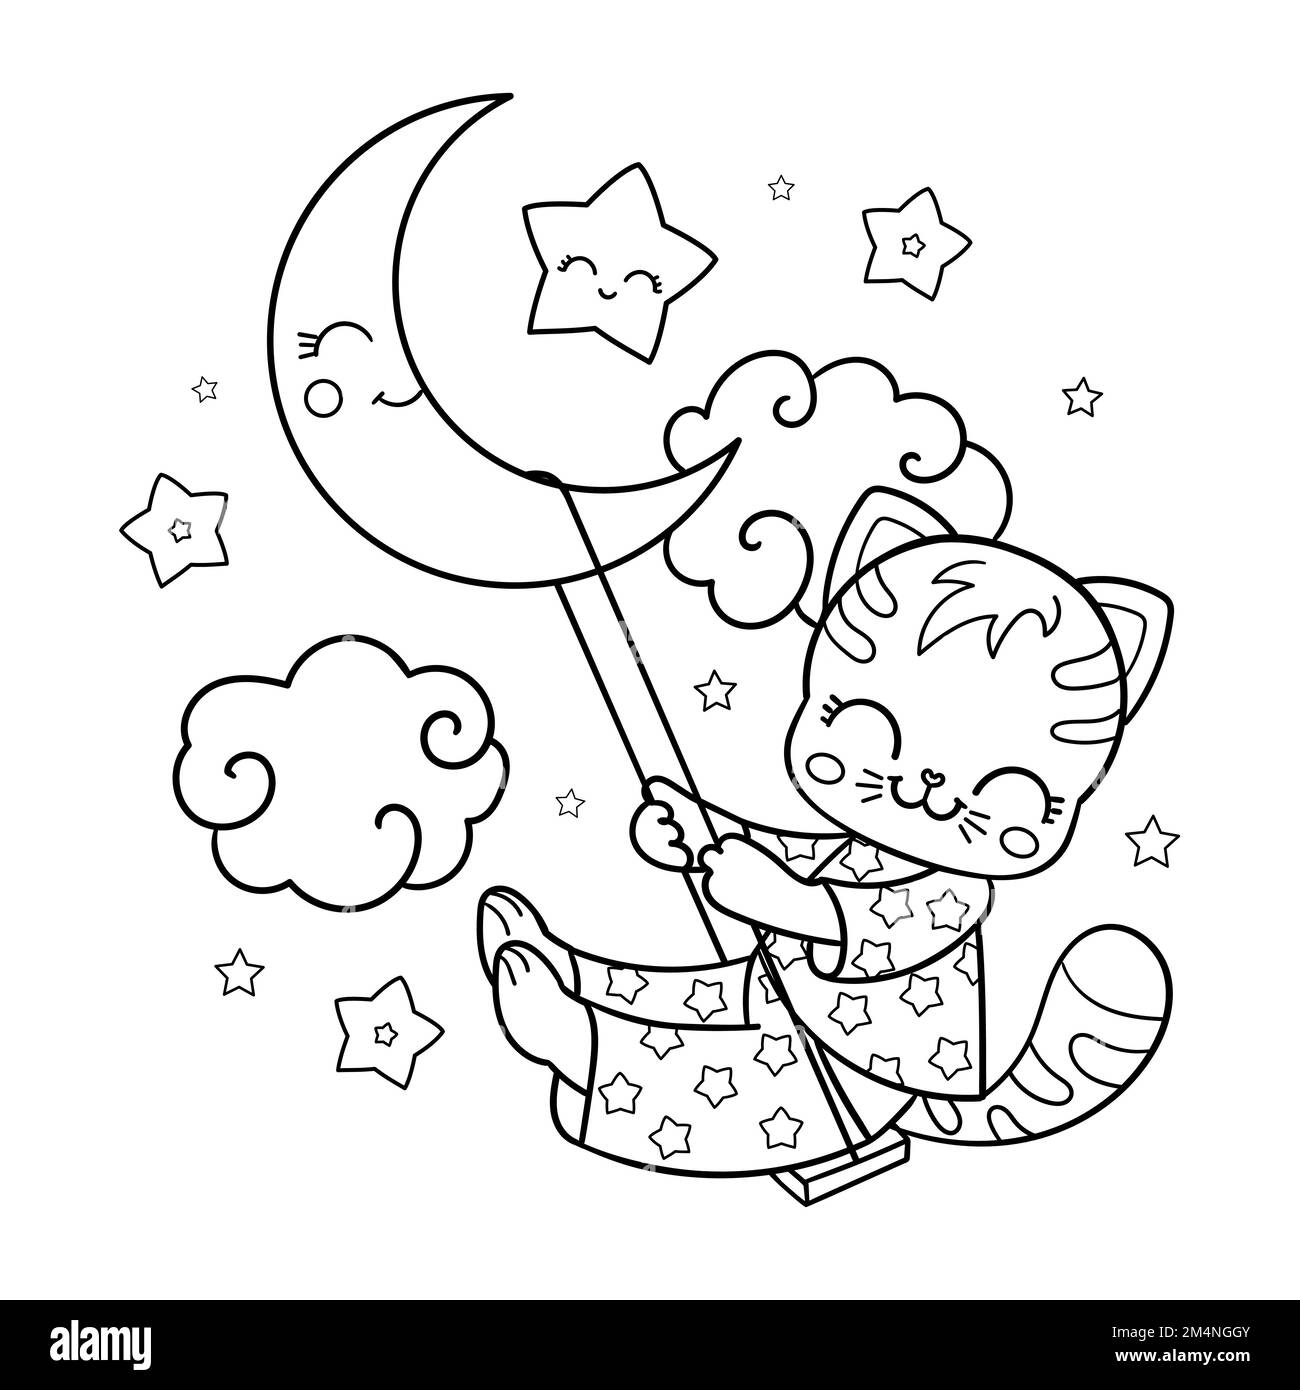 Le chat en pyjama bascule sur la lune. Illustration linéaire noir et blanc. Vecteur Illustration de Vecteur